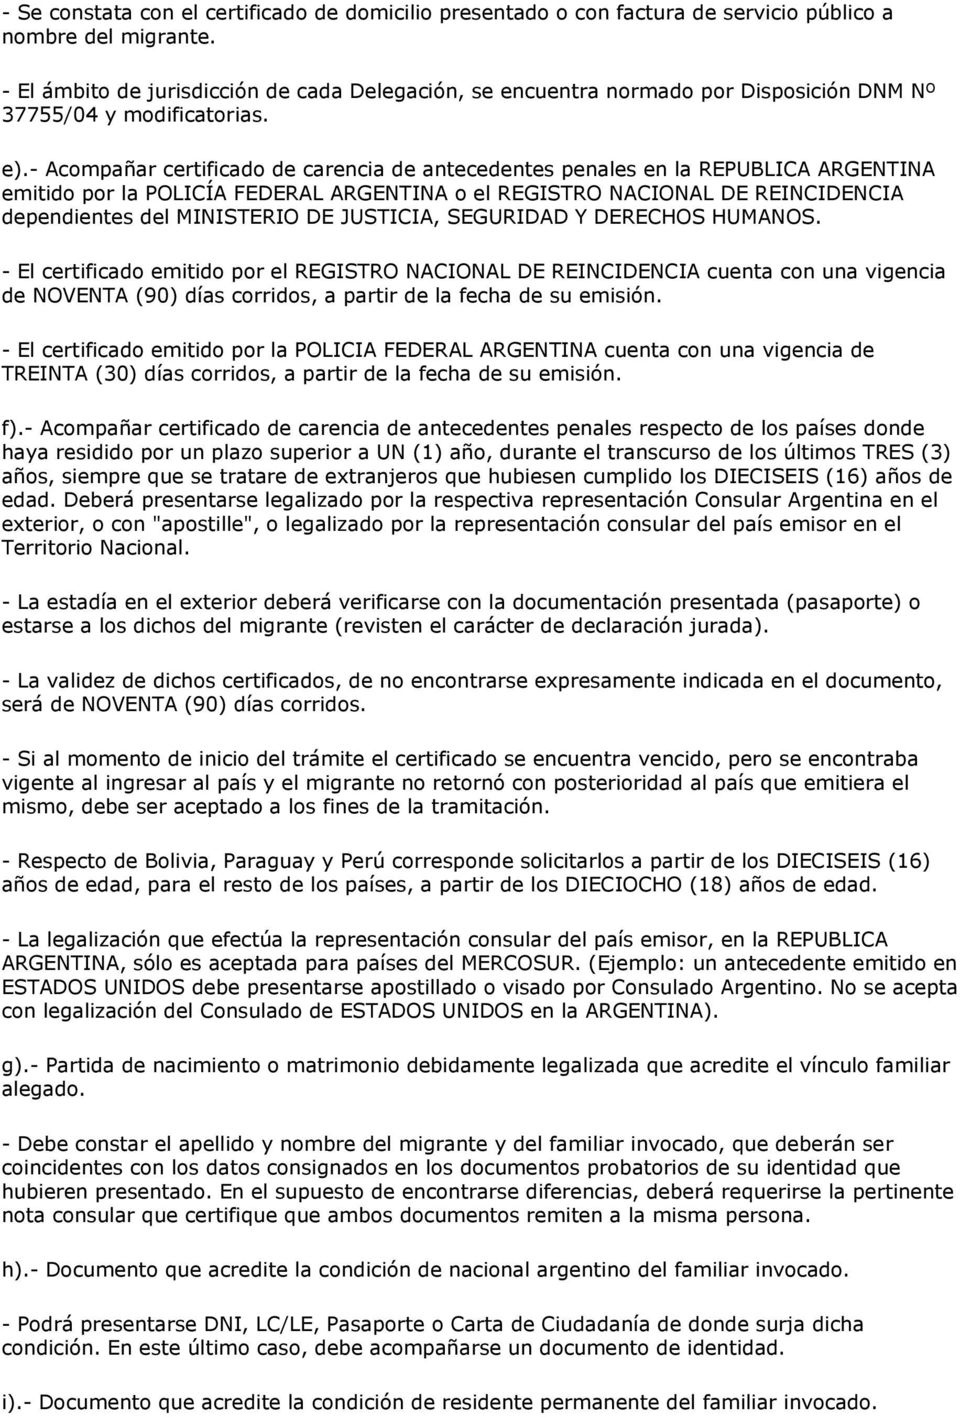 - Acompañar certificado de carencia de antecedentes penales en la REPUBLICA ARGENTINA emitido por la POLICÍA FEDERAL ARGENTINA o el REGISTRO NACIONAL DE REINCIDENCIA dependientes del MINISTERIO DE